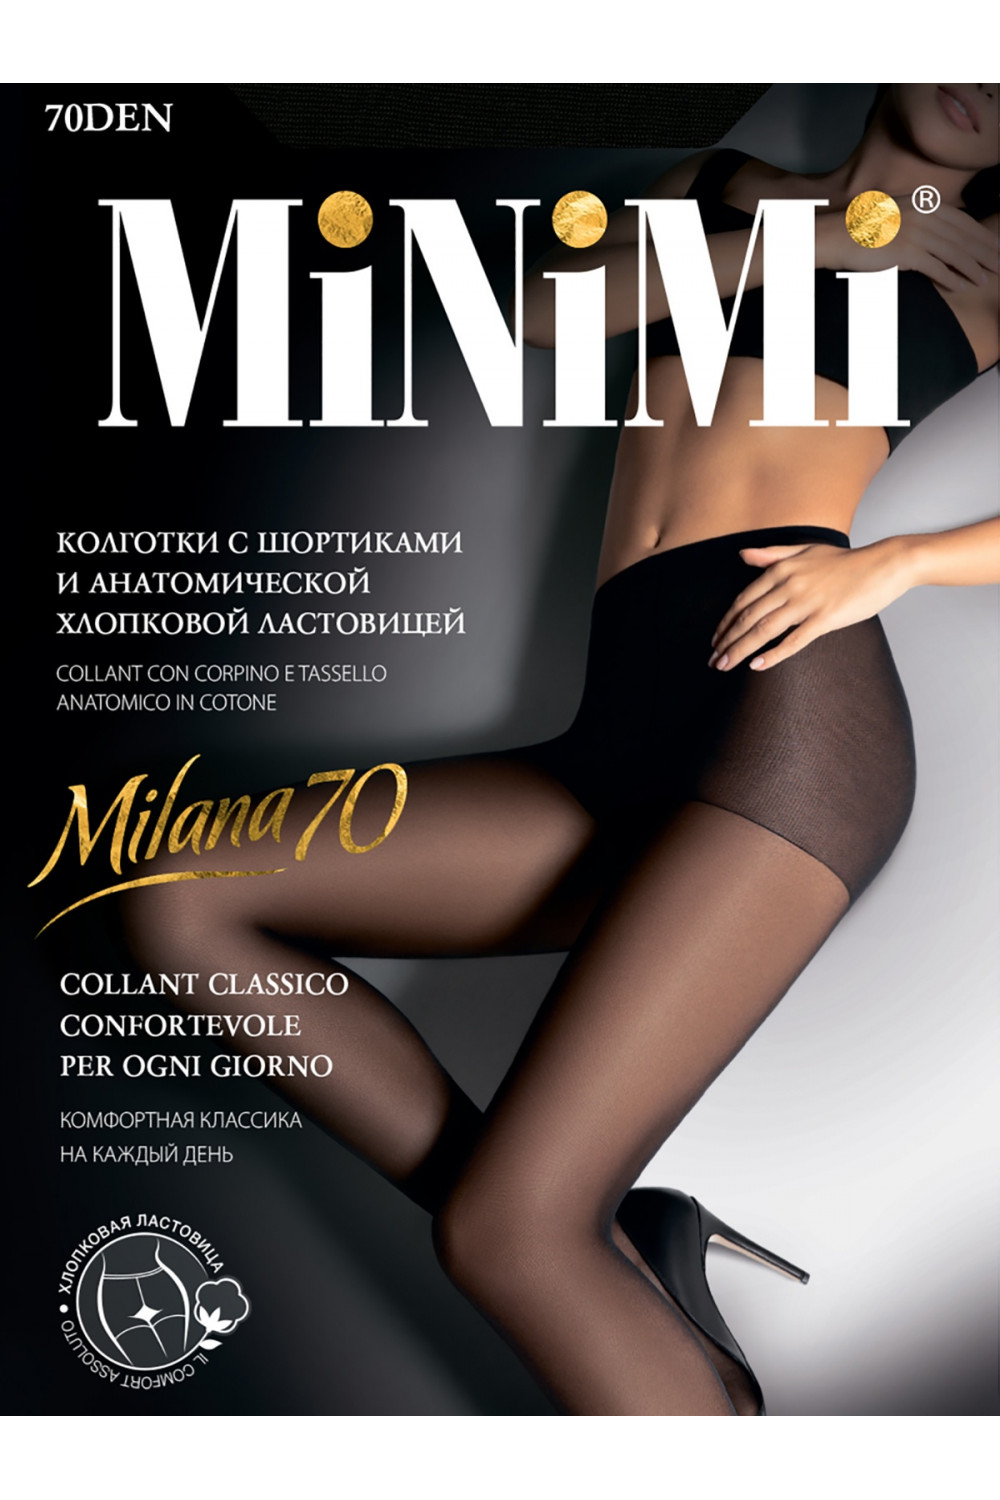 MILANA 70 (шортики) Женские эластичные колготки 70 den на каждый день. Усиленная верхняя часть в виде шортиков